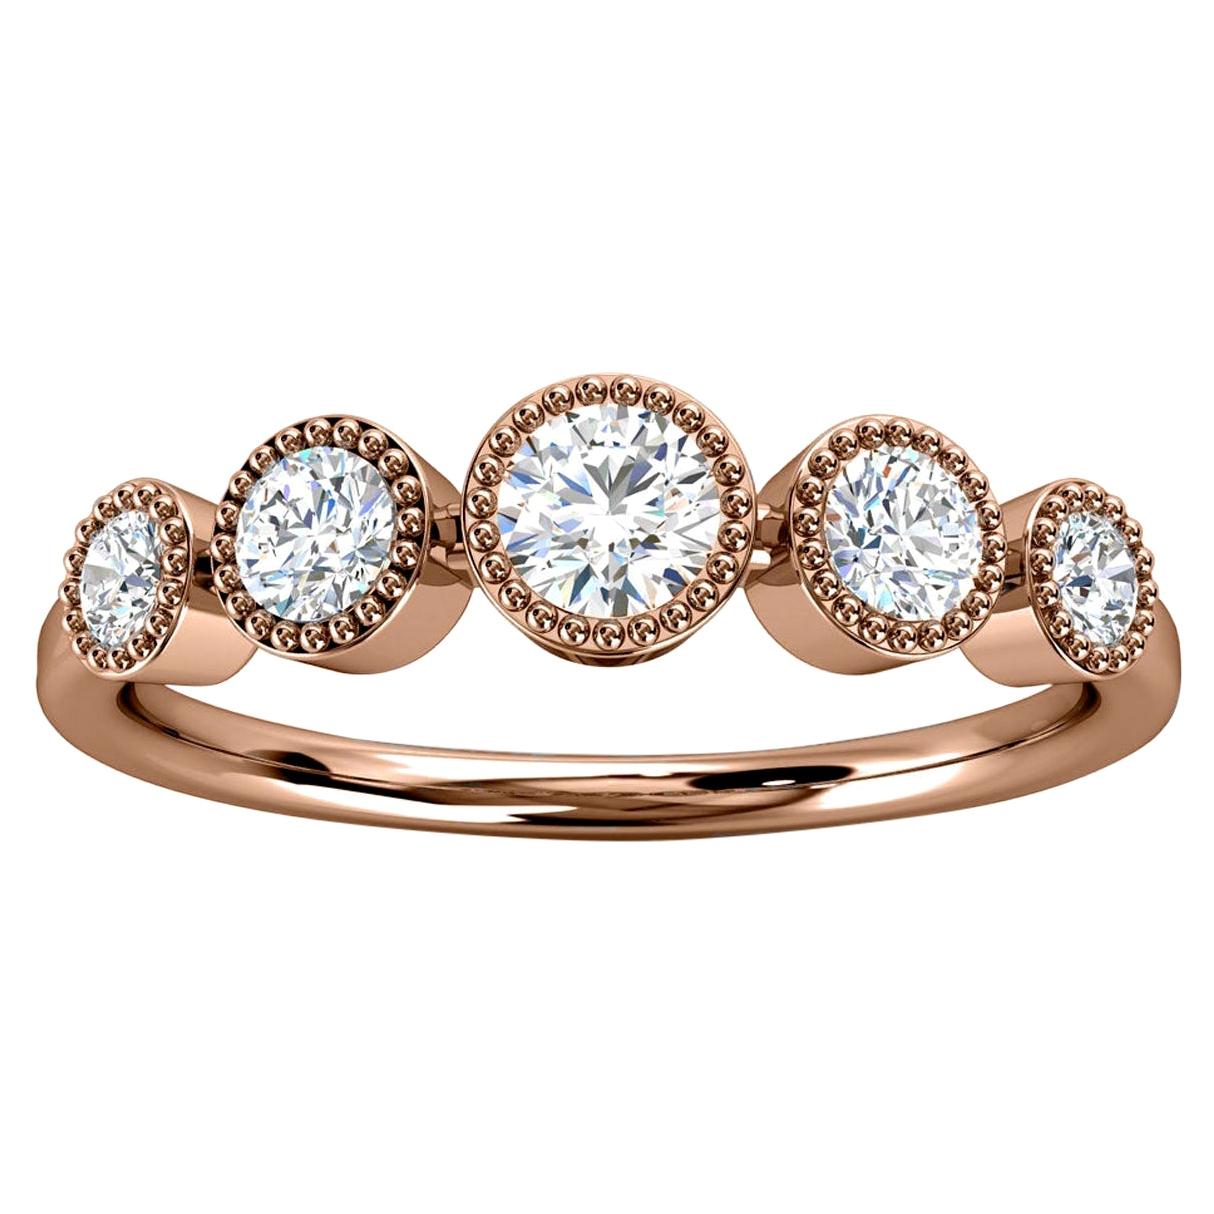 For Sale:  14K Rose Gold Augusta Bezel Milgrain Diamond Ring '2/5 ct. tw'